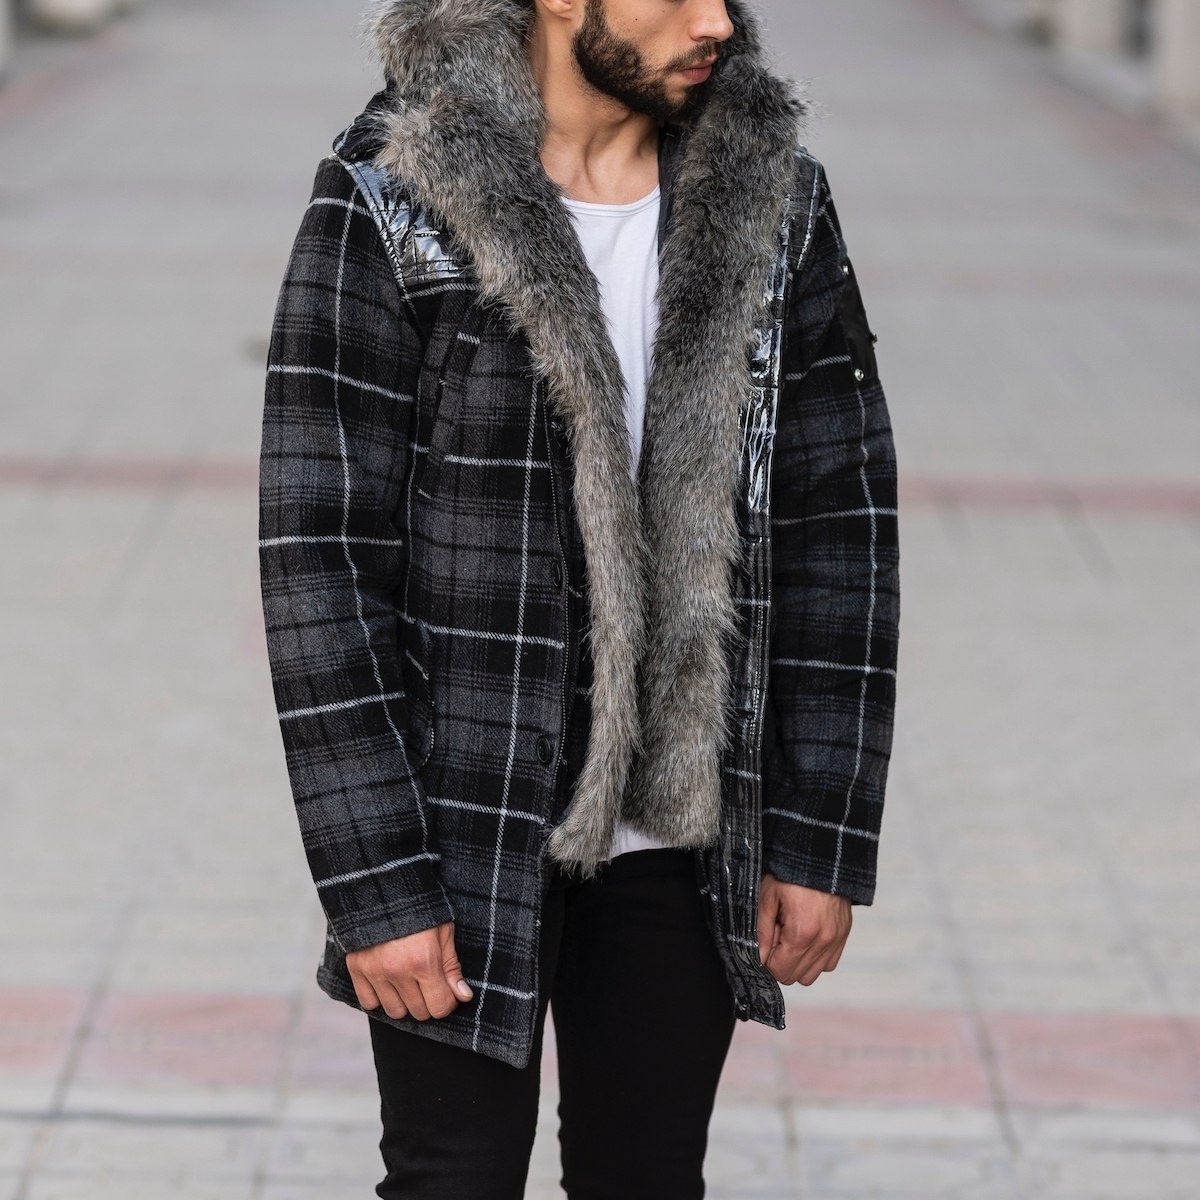 Furry Plaid Jacket With Hood